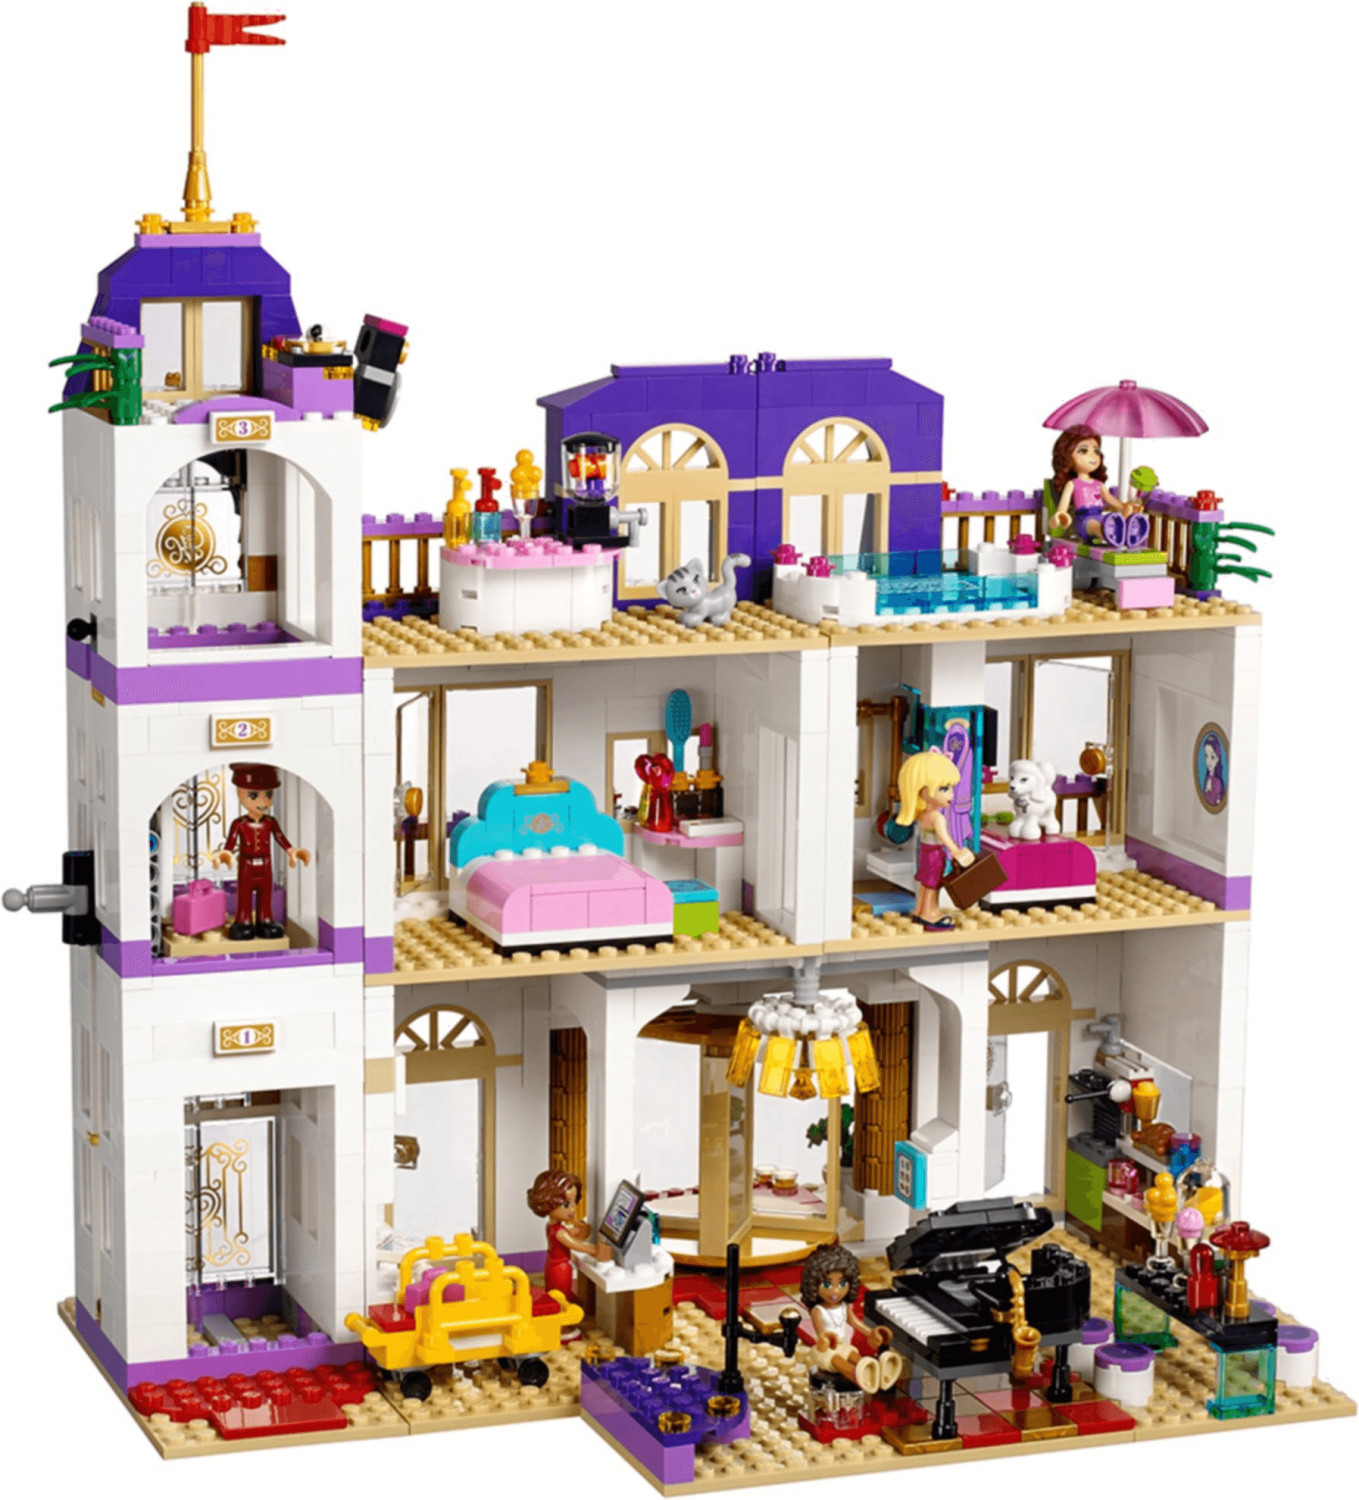 Mantle enke ring LEGO Friends 41101 - Il Grand Hotel di Heartlake a € 329,90 (oggi) |  Migliori prezzi e offerte su idealo